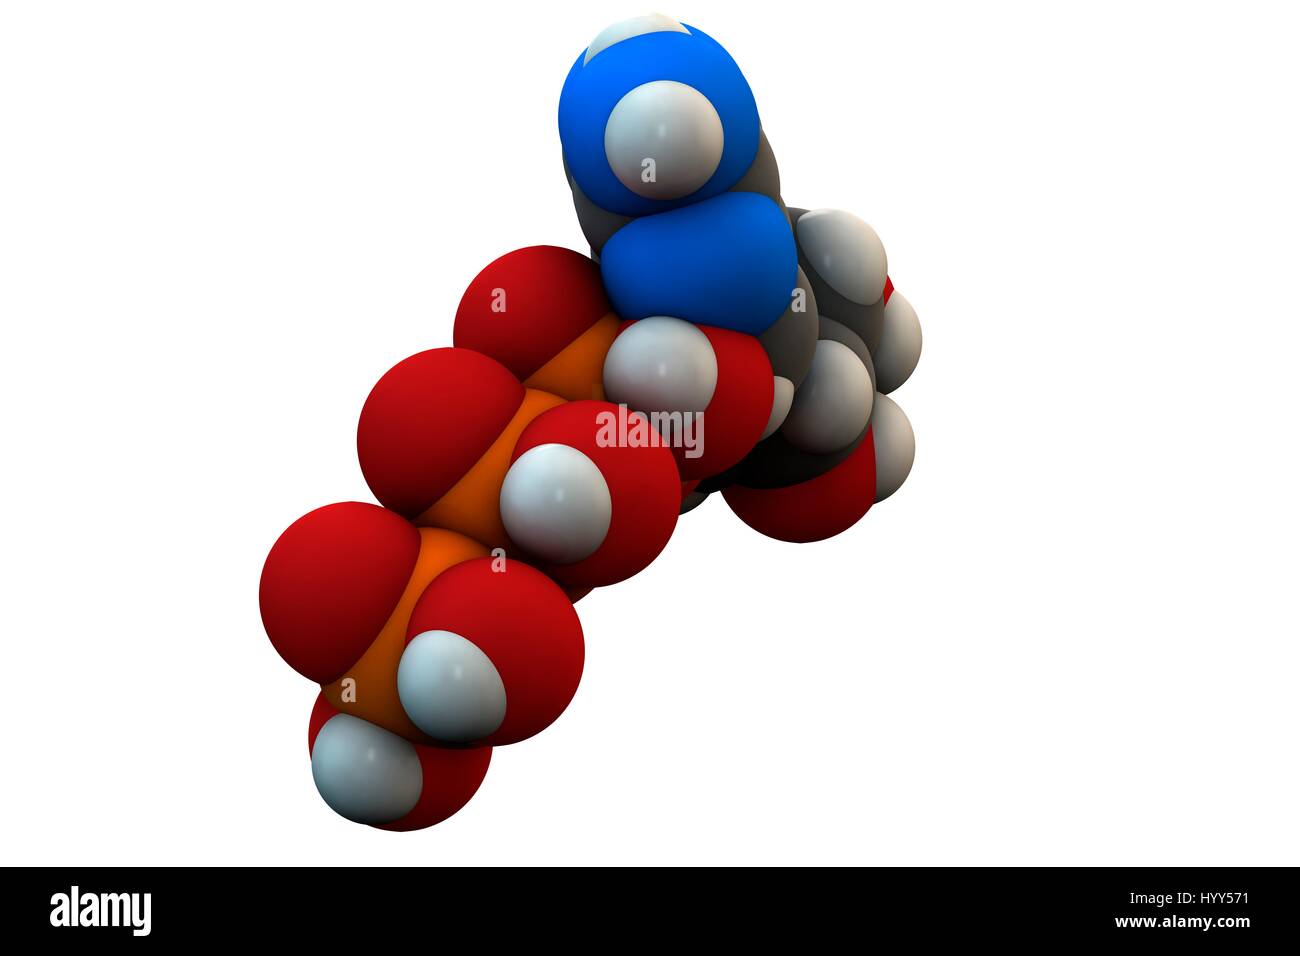 L'adenosina trifosfato (ATP) molecola. Funzioni come neurotrasmettitore, RNA (acido ribonucleico) blocchi di costruzione e il trasferimento di energia molecola. Formula chimica è C10H16N5O13P3. Gli atomi sono rappresentati come sfere: carbonio (grigio), Idrogeno (bianco), Azoto (blu), Ossigeno (rosso), Fosforo (arancione). Illustrazione. Foto Stock